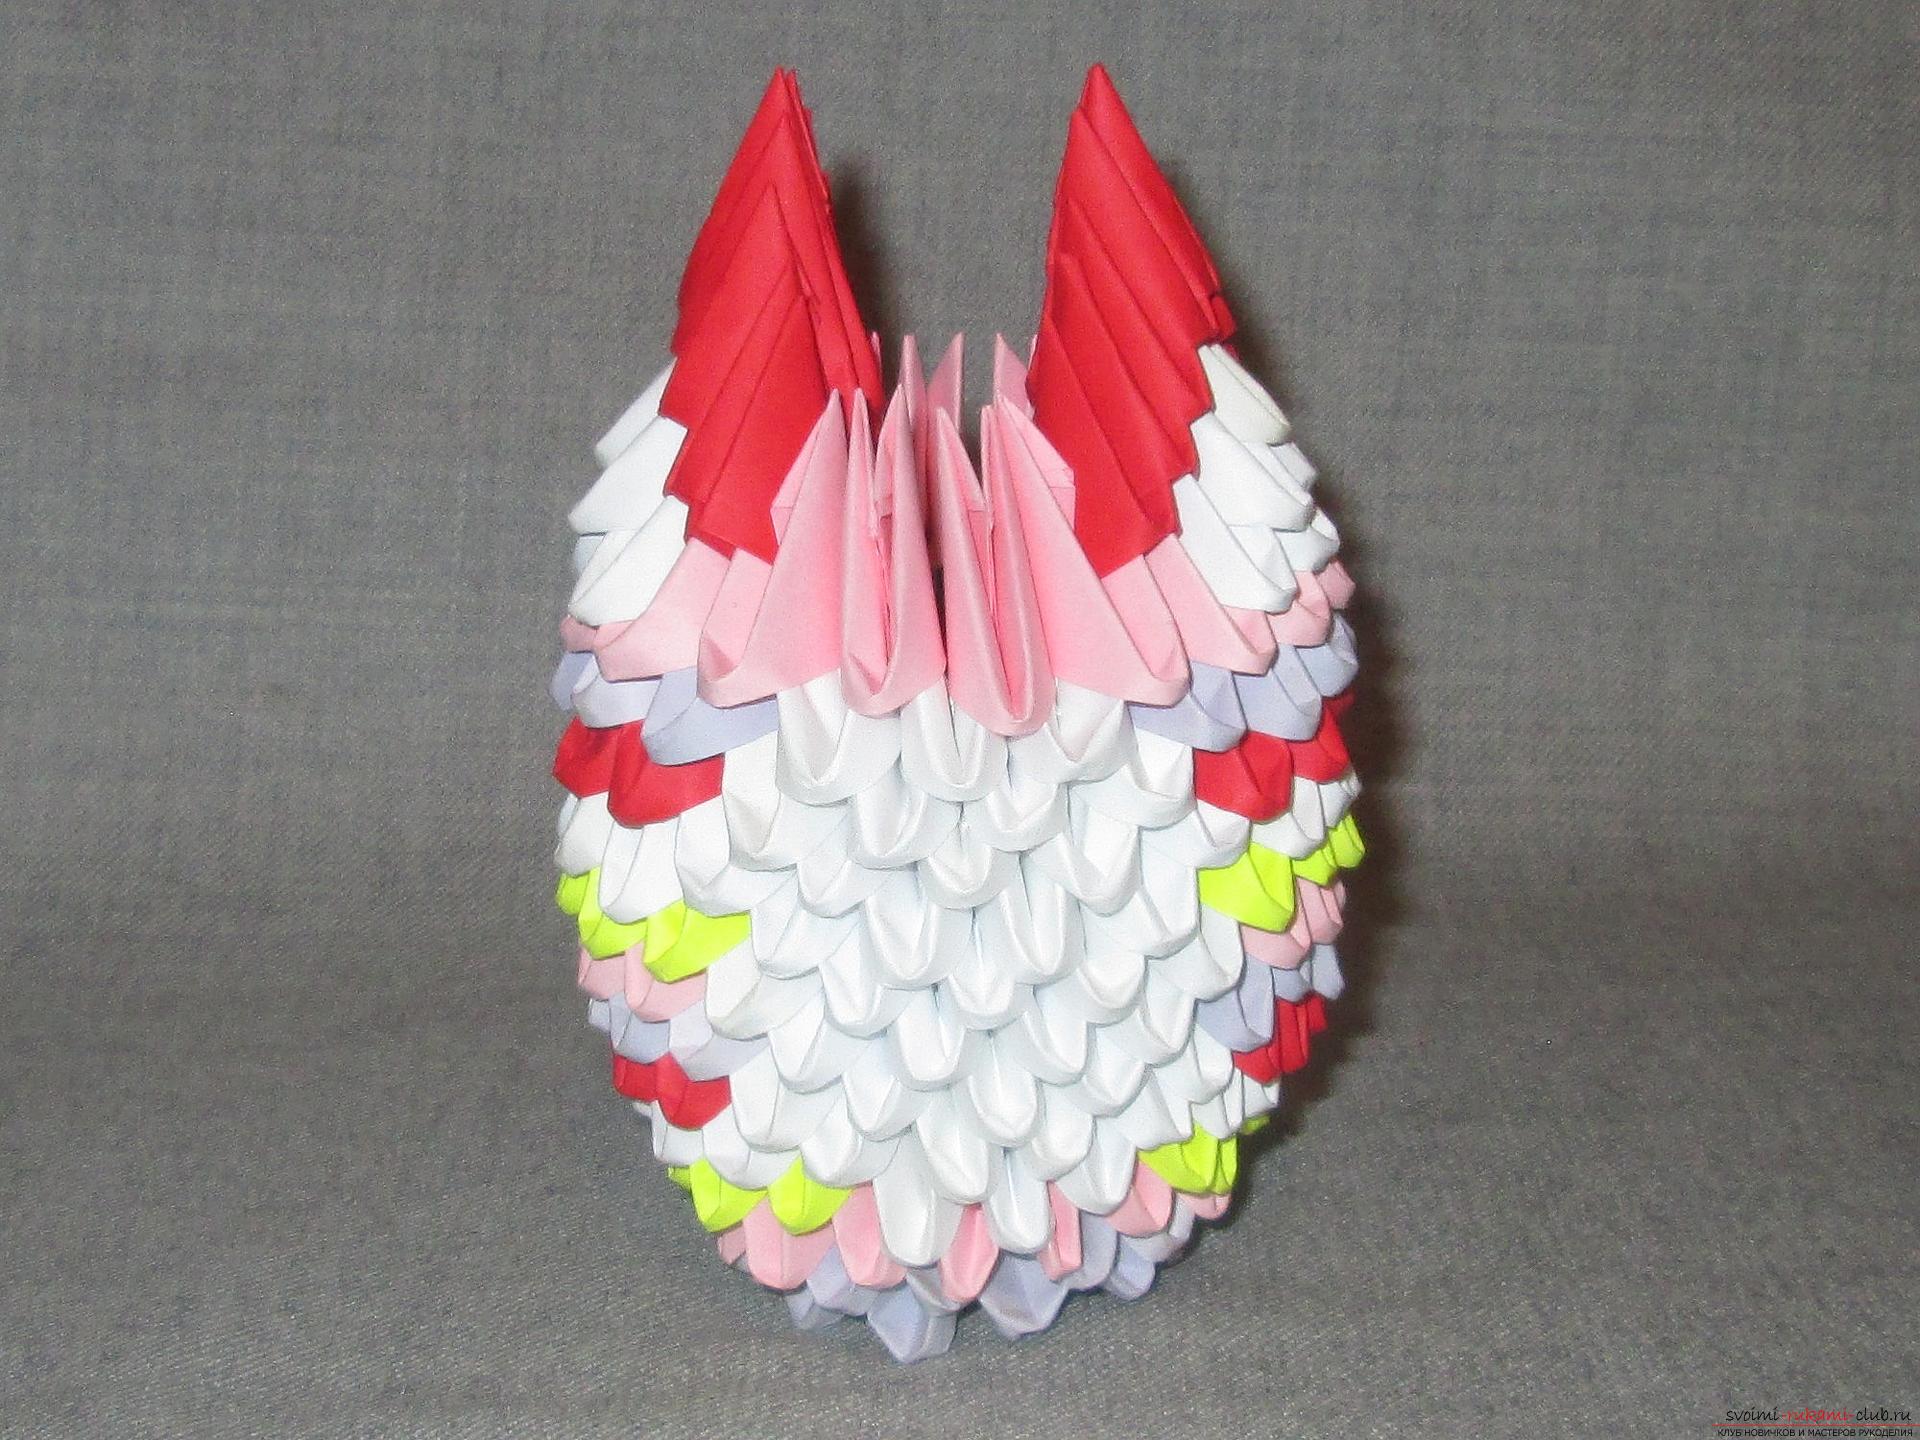 Als je wilt leren hoe je modulaire origami maakt, bekijk dan onze masterclass .. Foto # 27